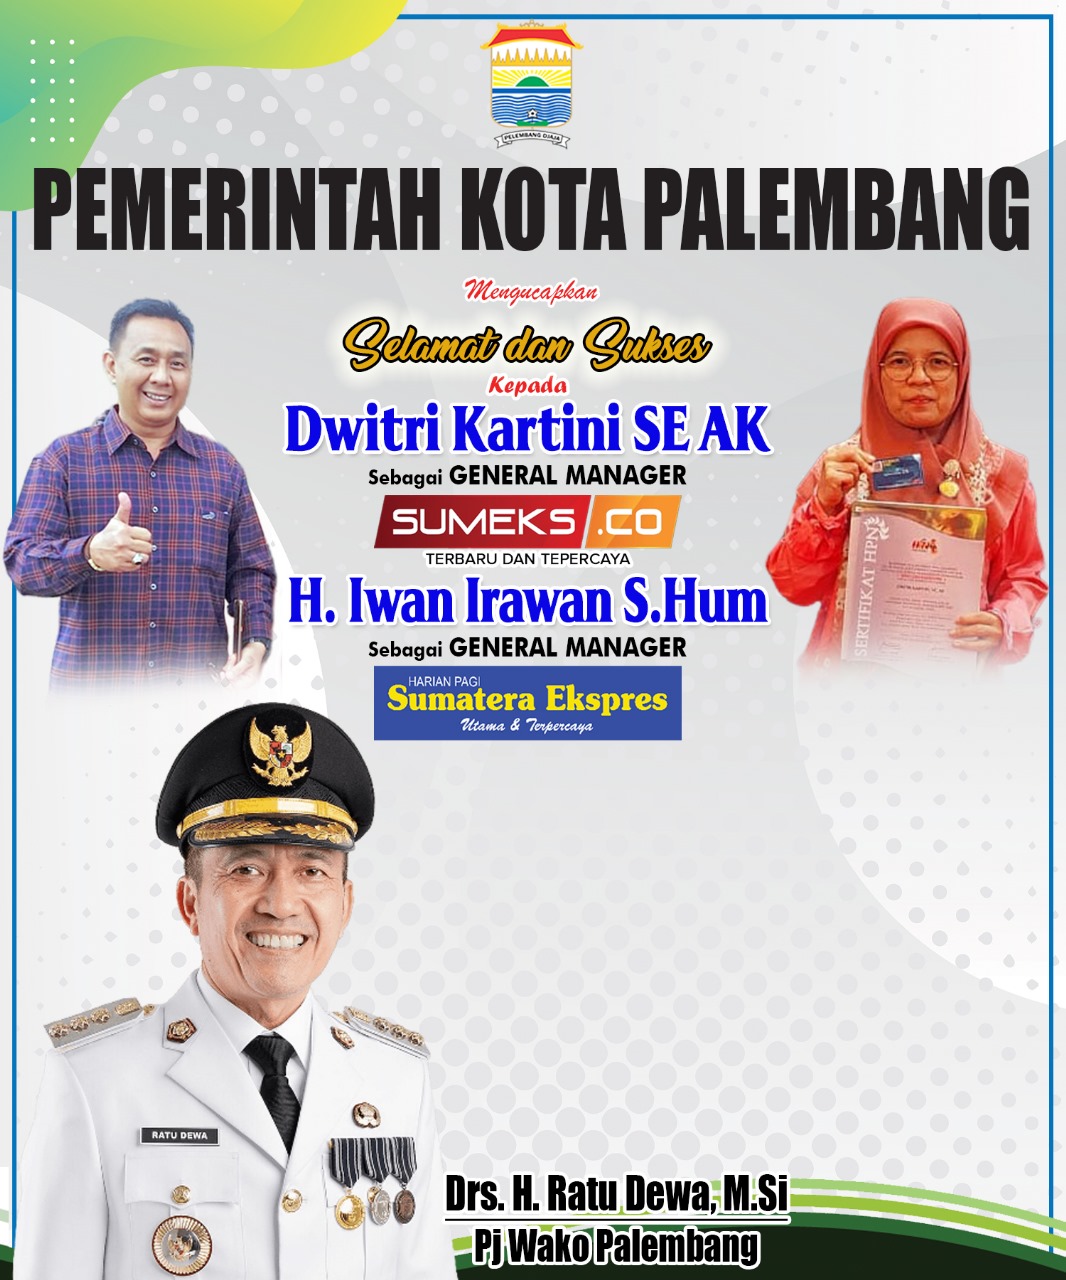 Pemerintah Kota Palembang Mengucapkan Selamat dan Sukses Kepada Dwitri Kartini Sebagai GM SUMEKS.CO